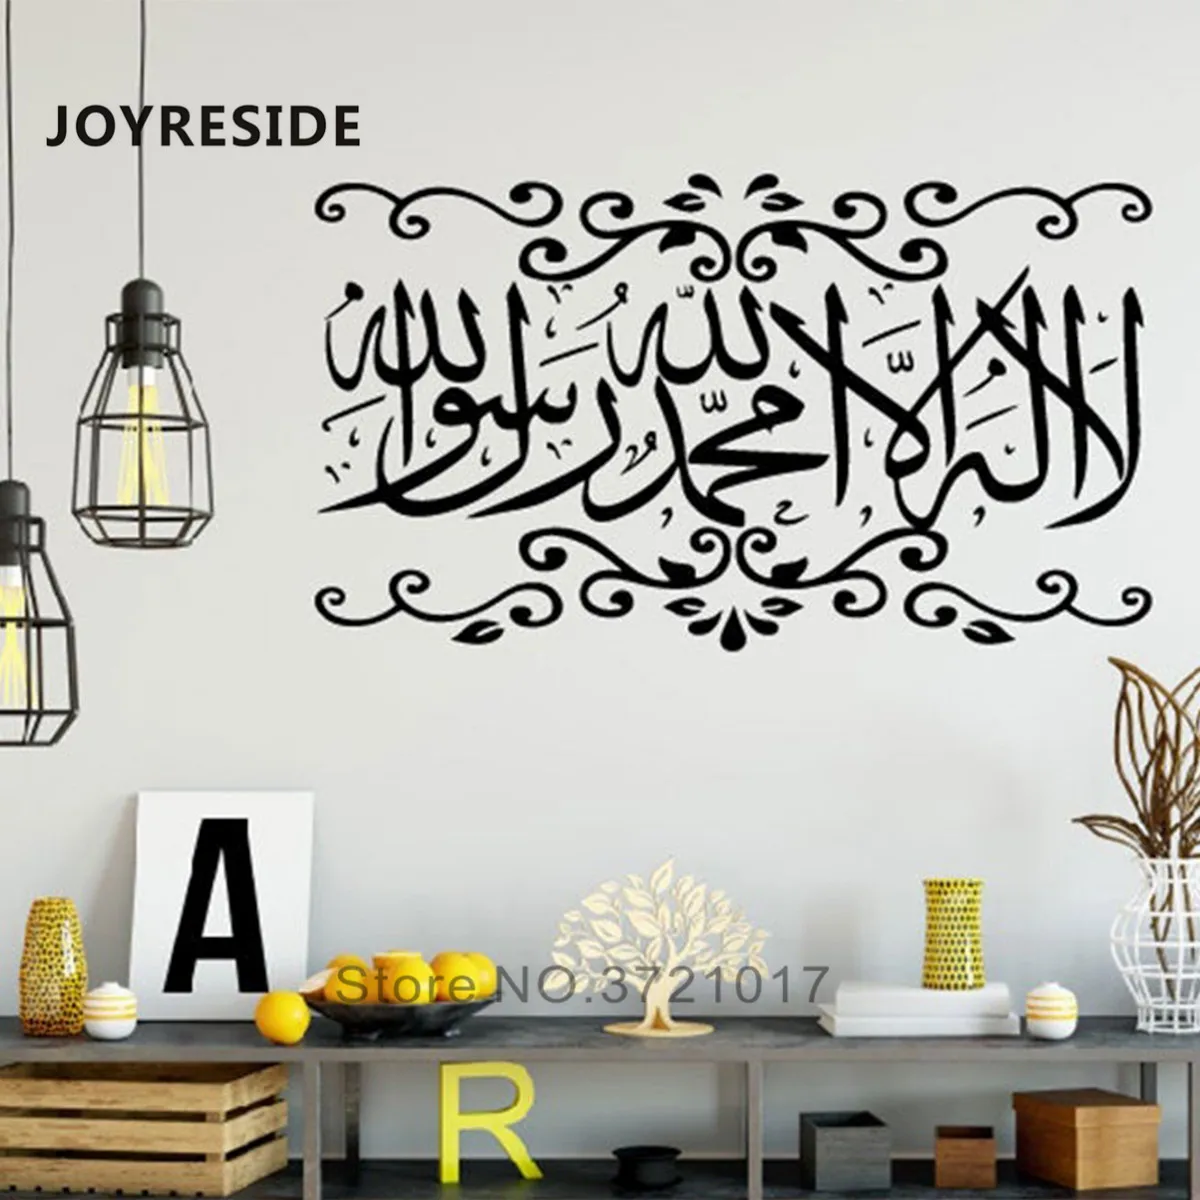 

Исламские настенные Стикеры для дома, гостиной, религиозный стиль, художественные украшения на стену, виниловые наклейки на стену, украшени...